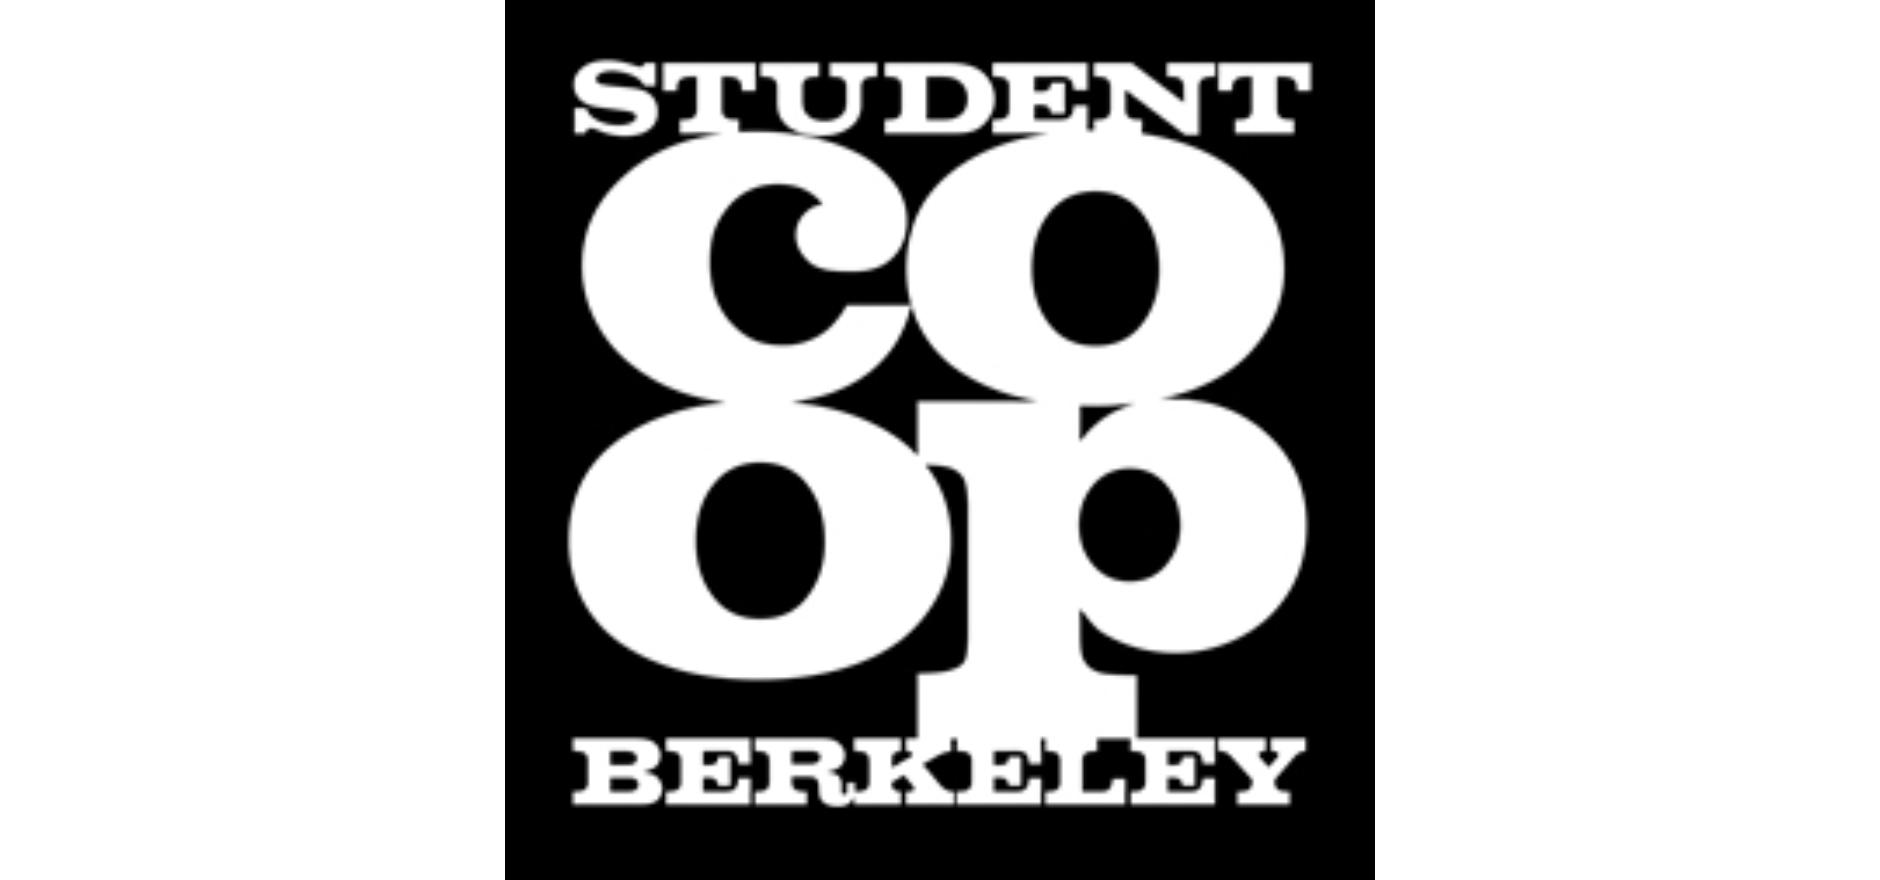 Berkeley Student Cooperative photo